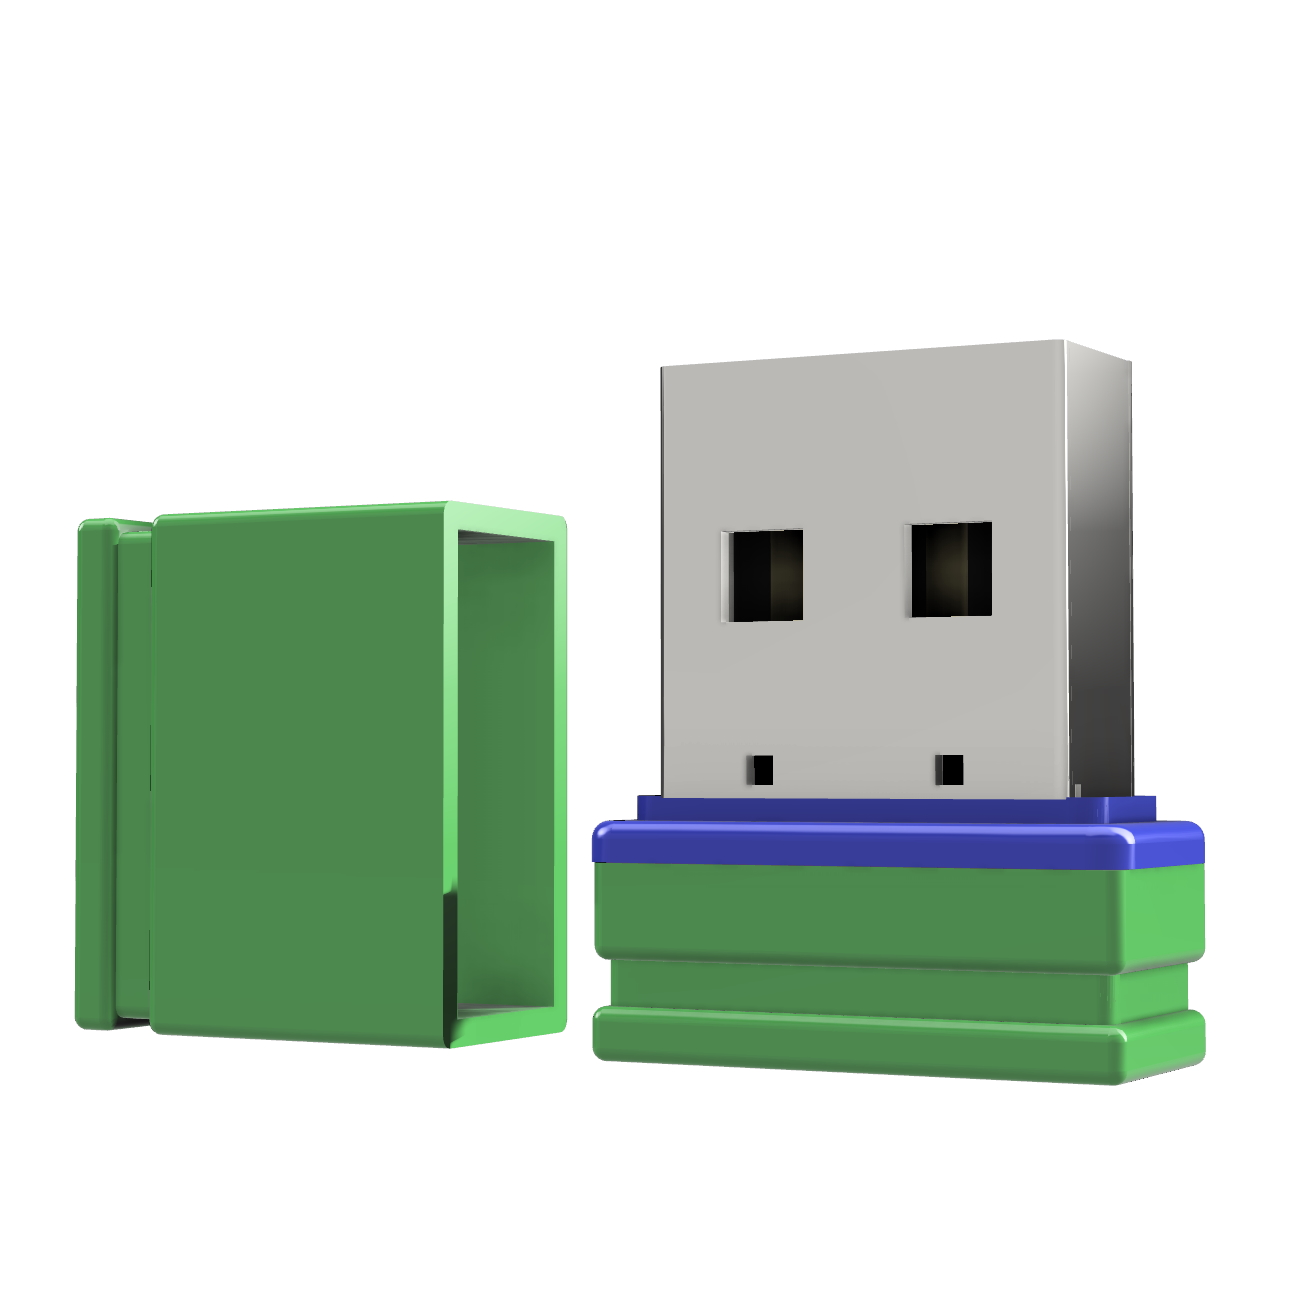 Mini P1 32 GB) ®ULTRA USB-Stick (Grün/Blau, USB GERMANY